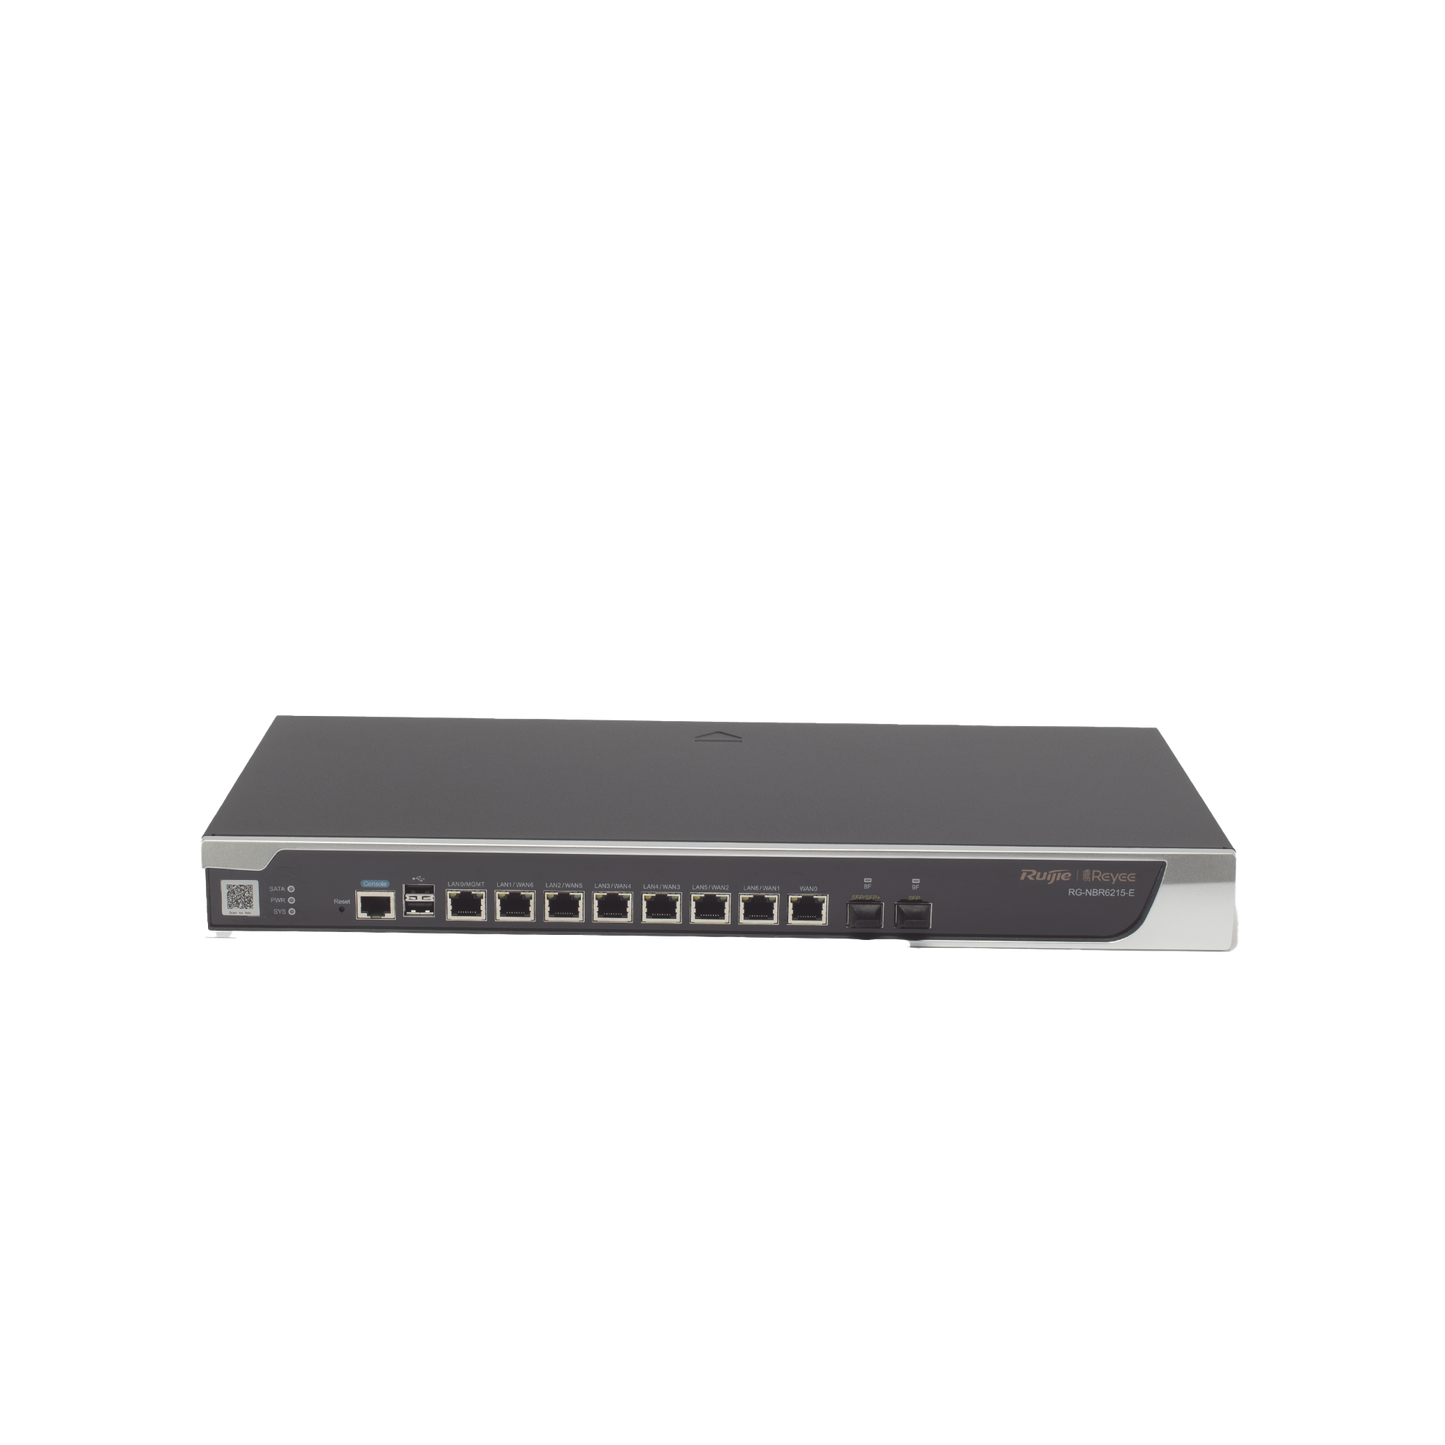 Router Core Administrable Cloud 8 Puertos Gigabit, 1 Puertos SFP 1GB Y 1 Puertos SFP+ 10GB hasta 2000 clientes.